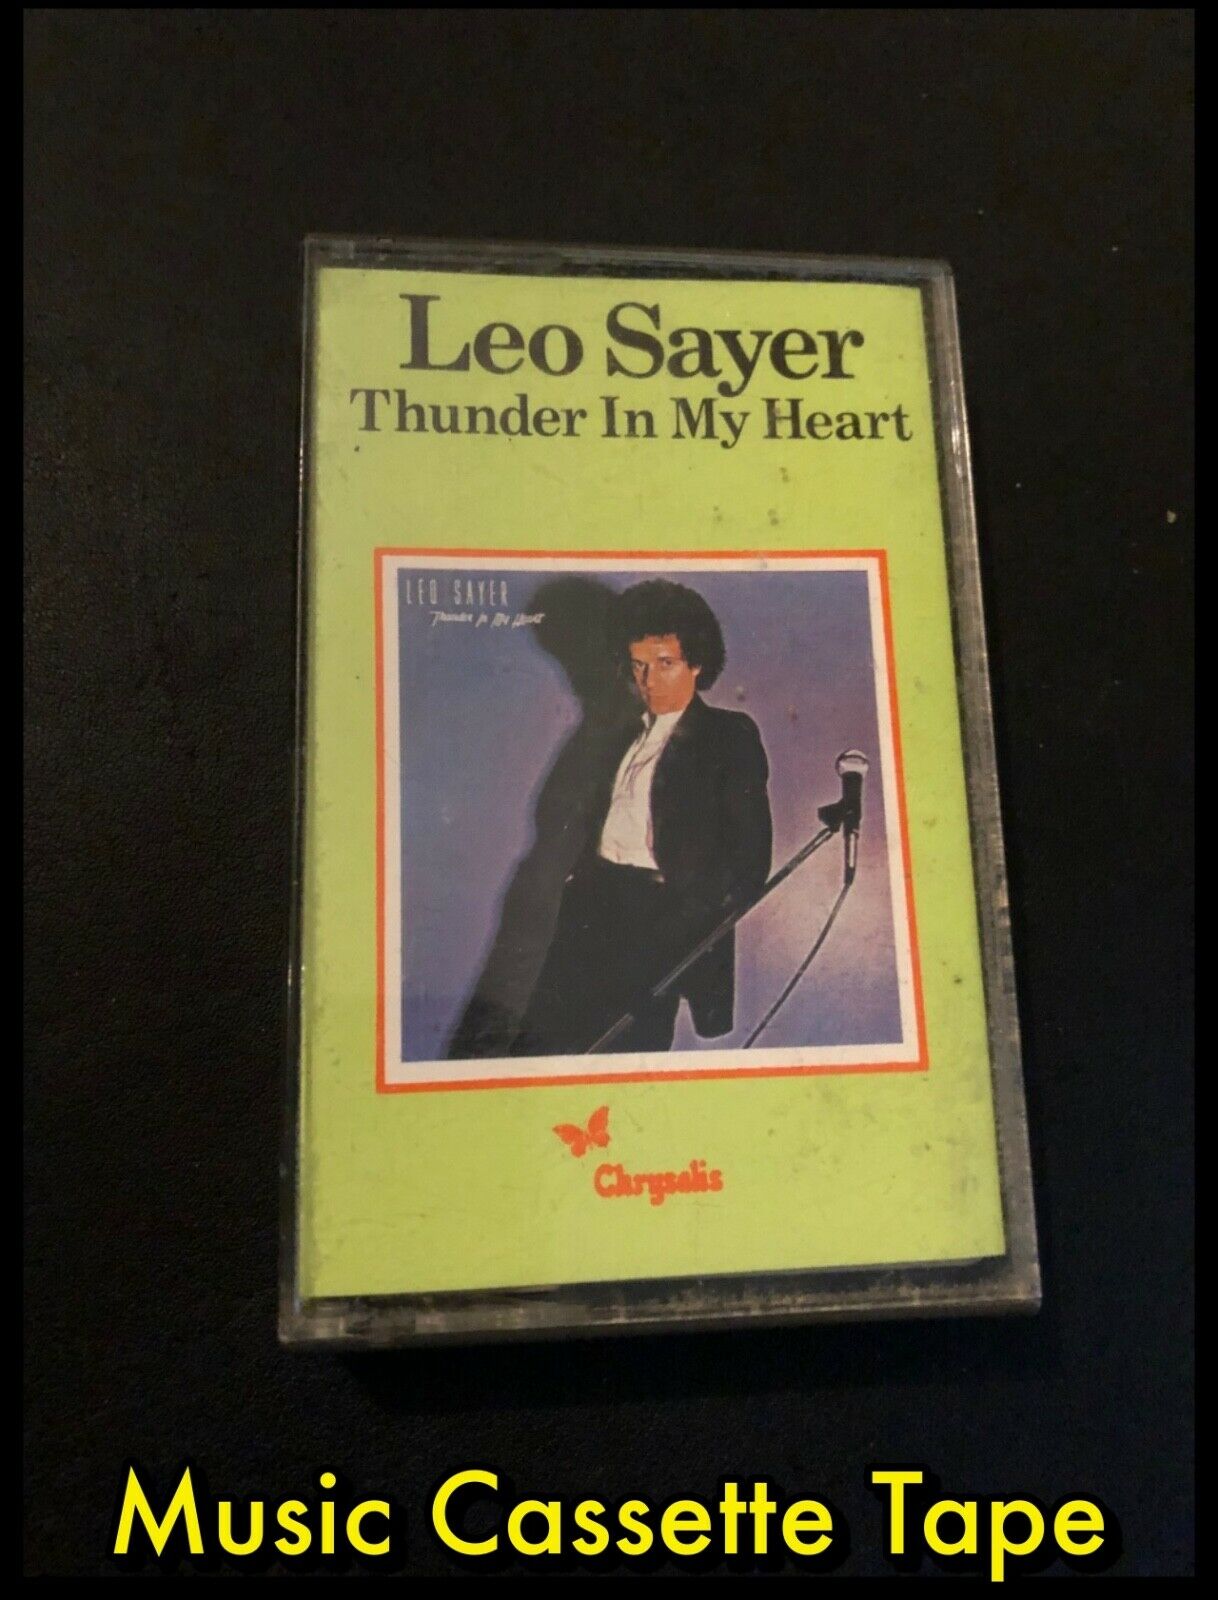 Leo Sayer Thunder In My Heart - Cassette Tape - Chrysalis ZCDL 1154